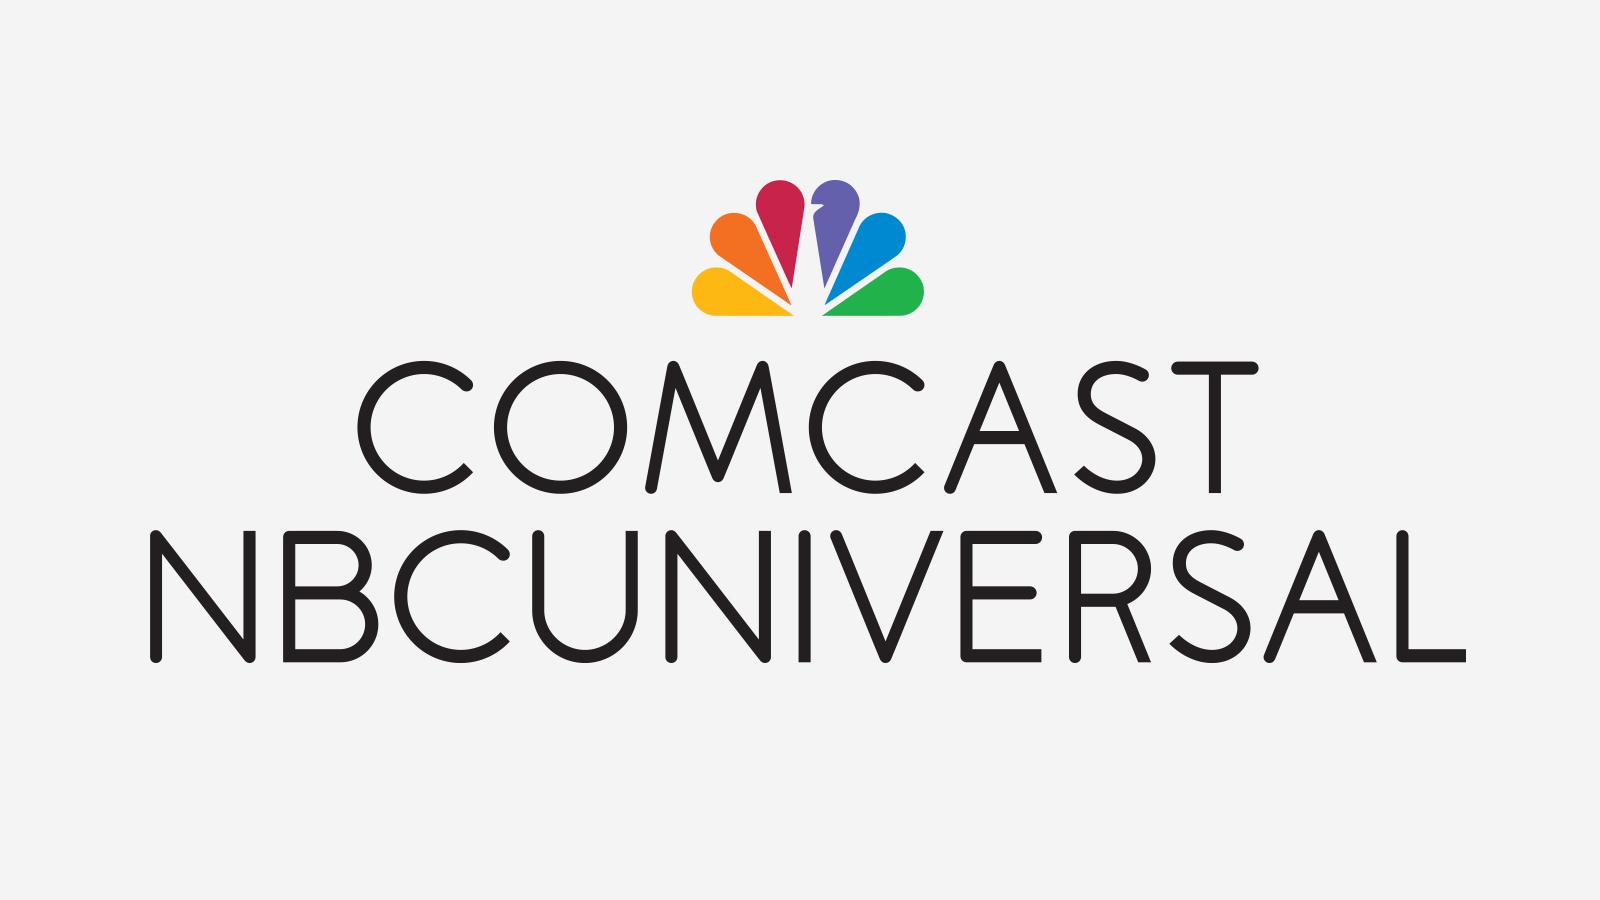 Comcast Logo - More Logos